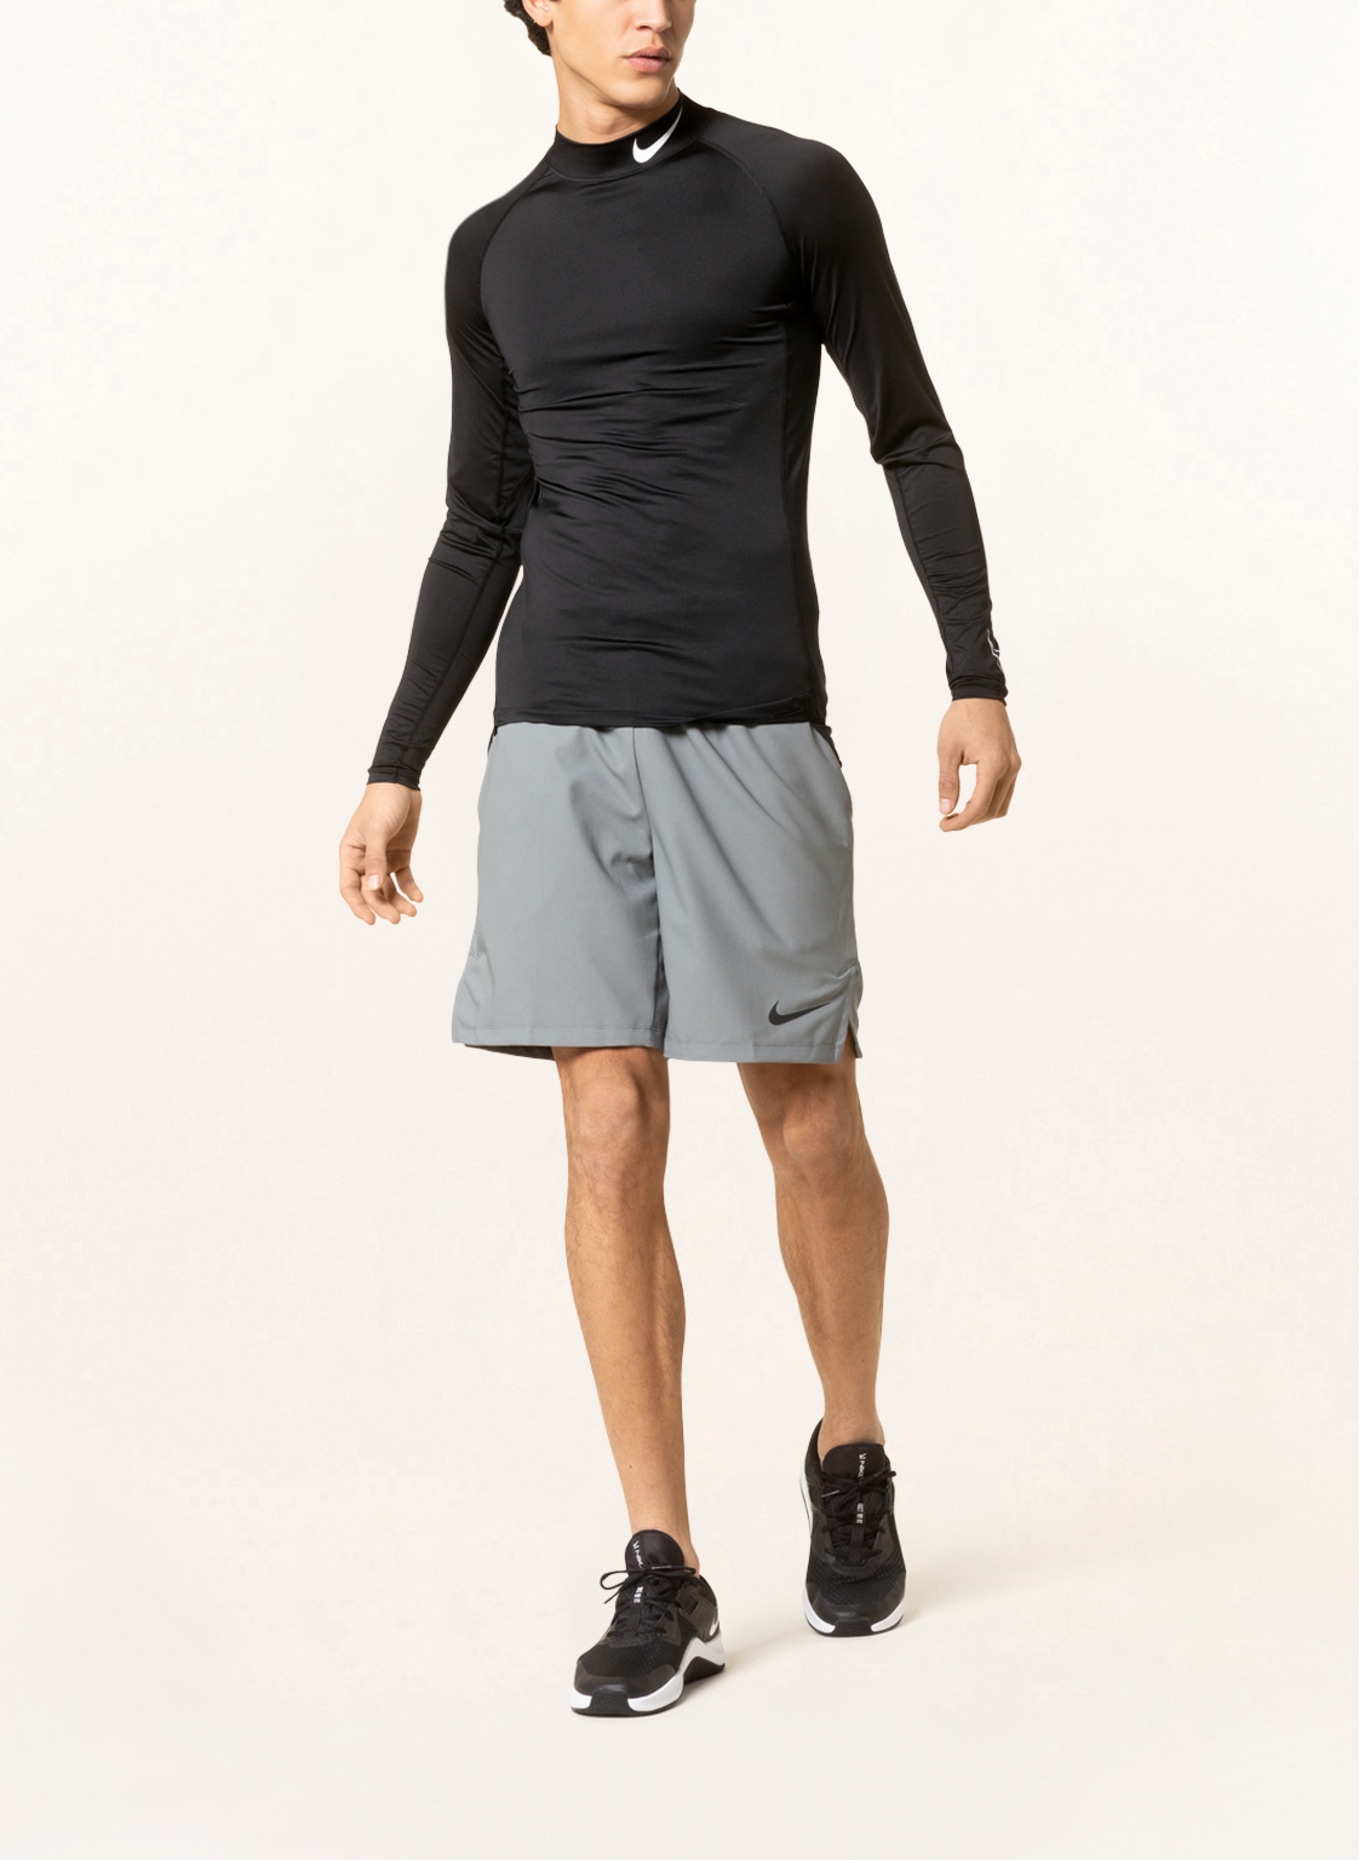 Nike Long sleeve shirt PRO DRI-FIT, Color: BLACK (Image 2)